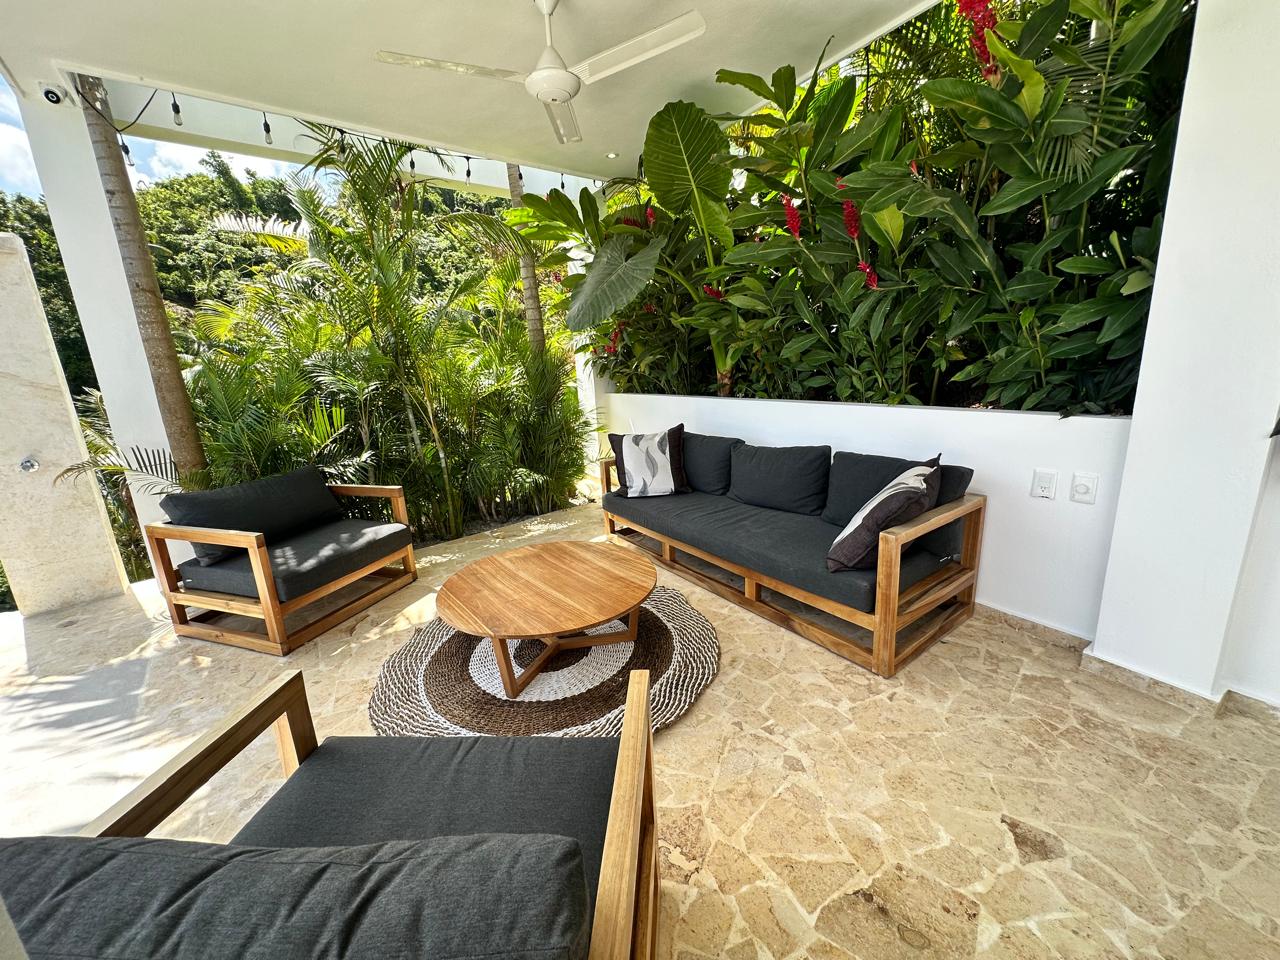 Splendid 4-bedroom villa with ocean vista - Las Terrenas Real Estate - Ocean Edge Dominican Republic (3)